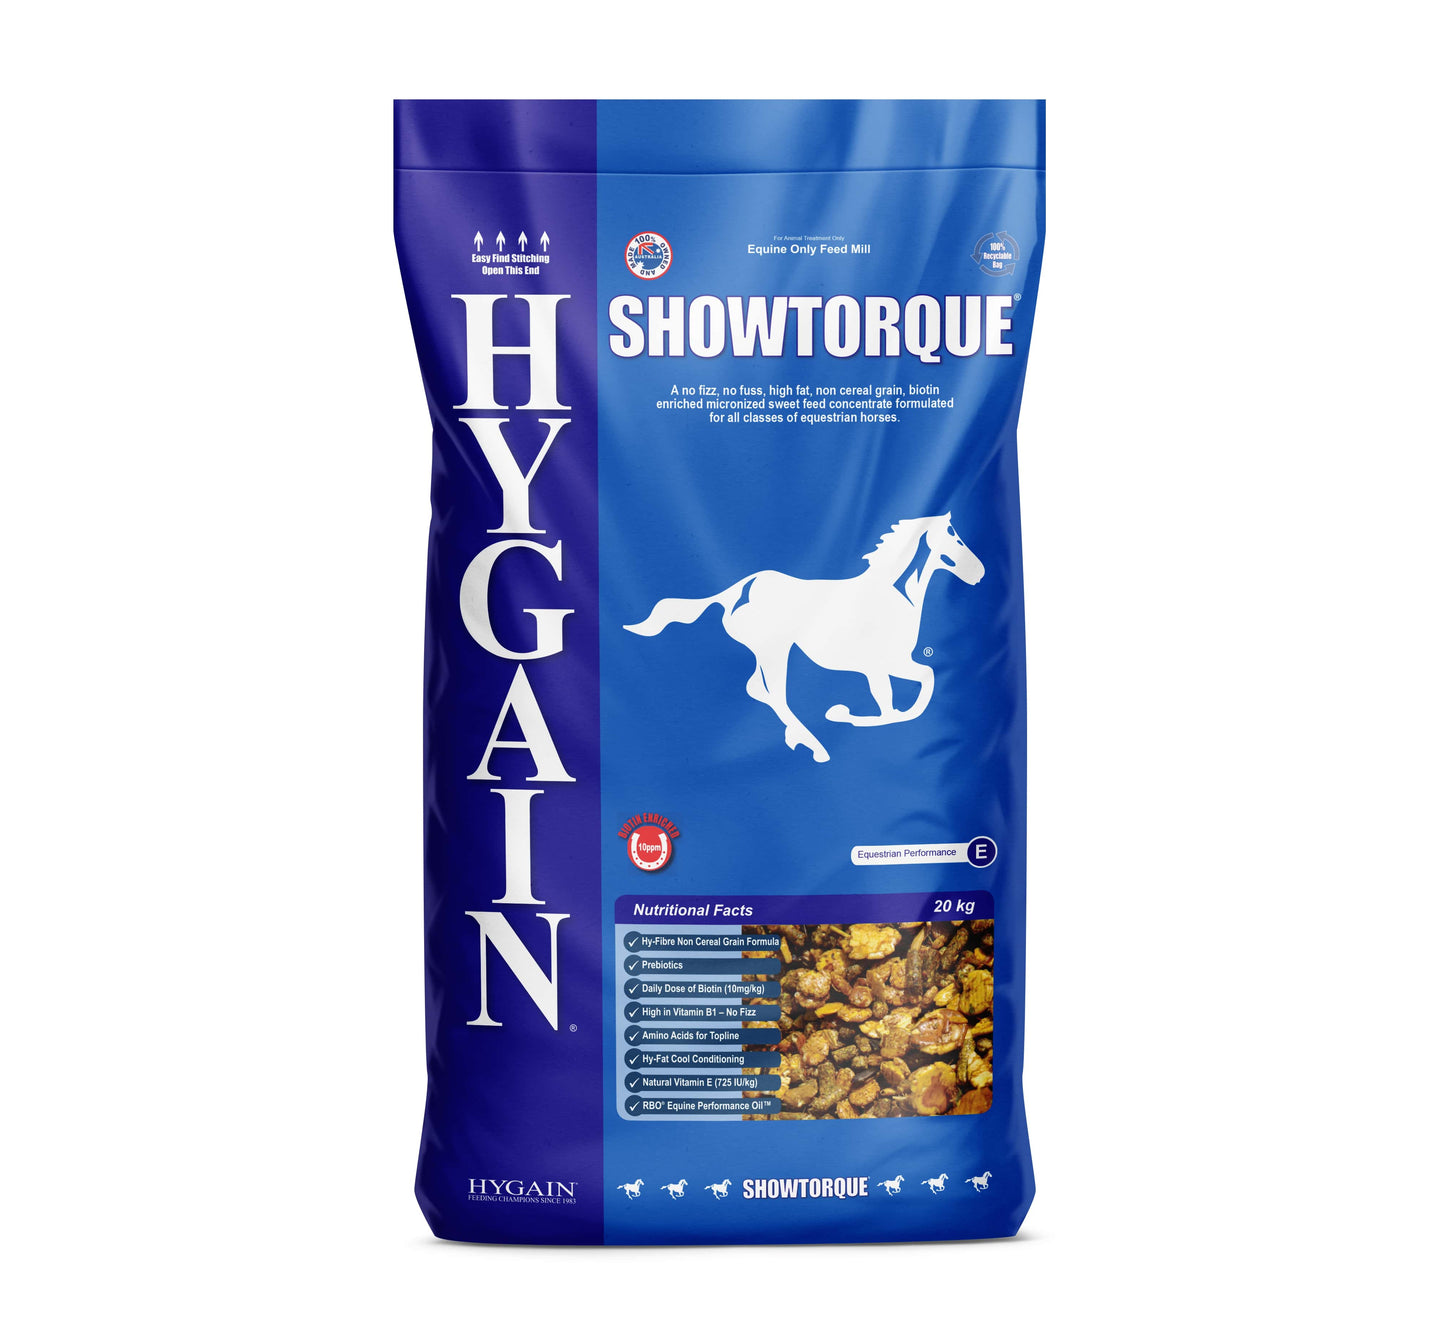 Hygain Showtorque Horse Feed